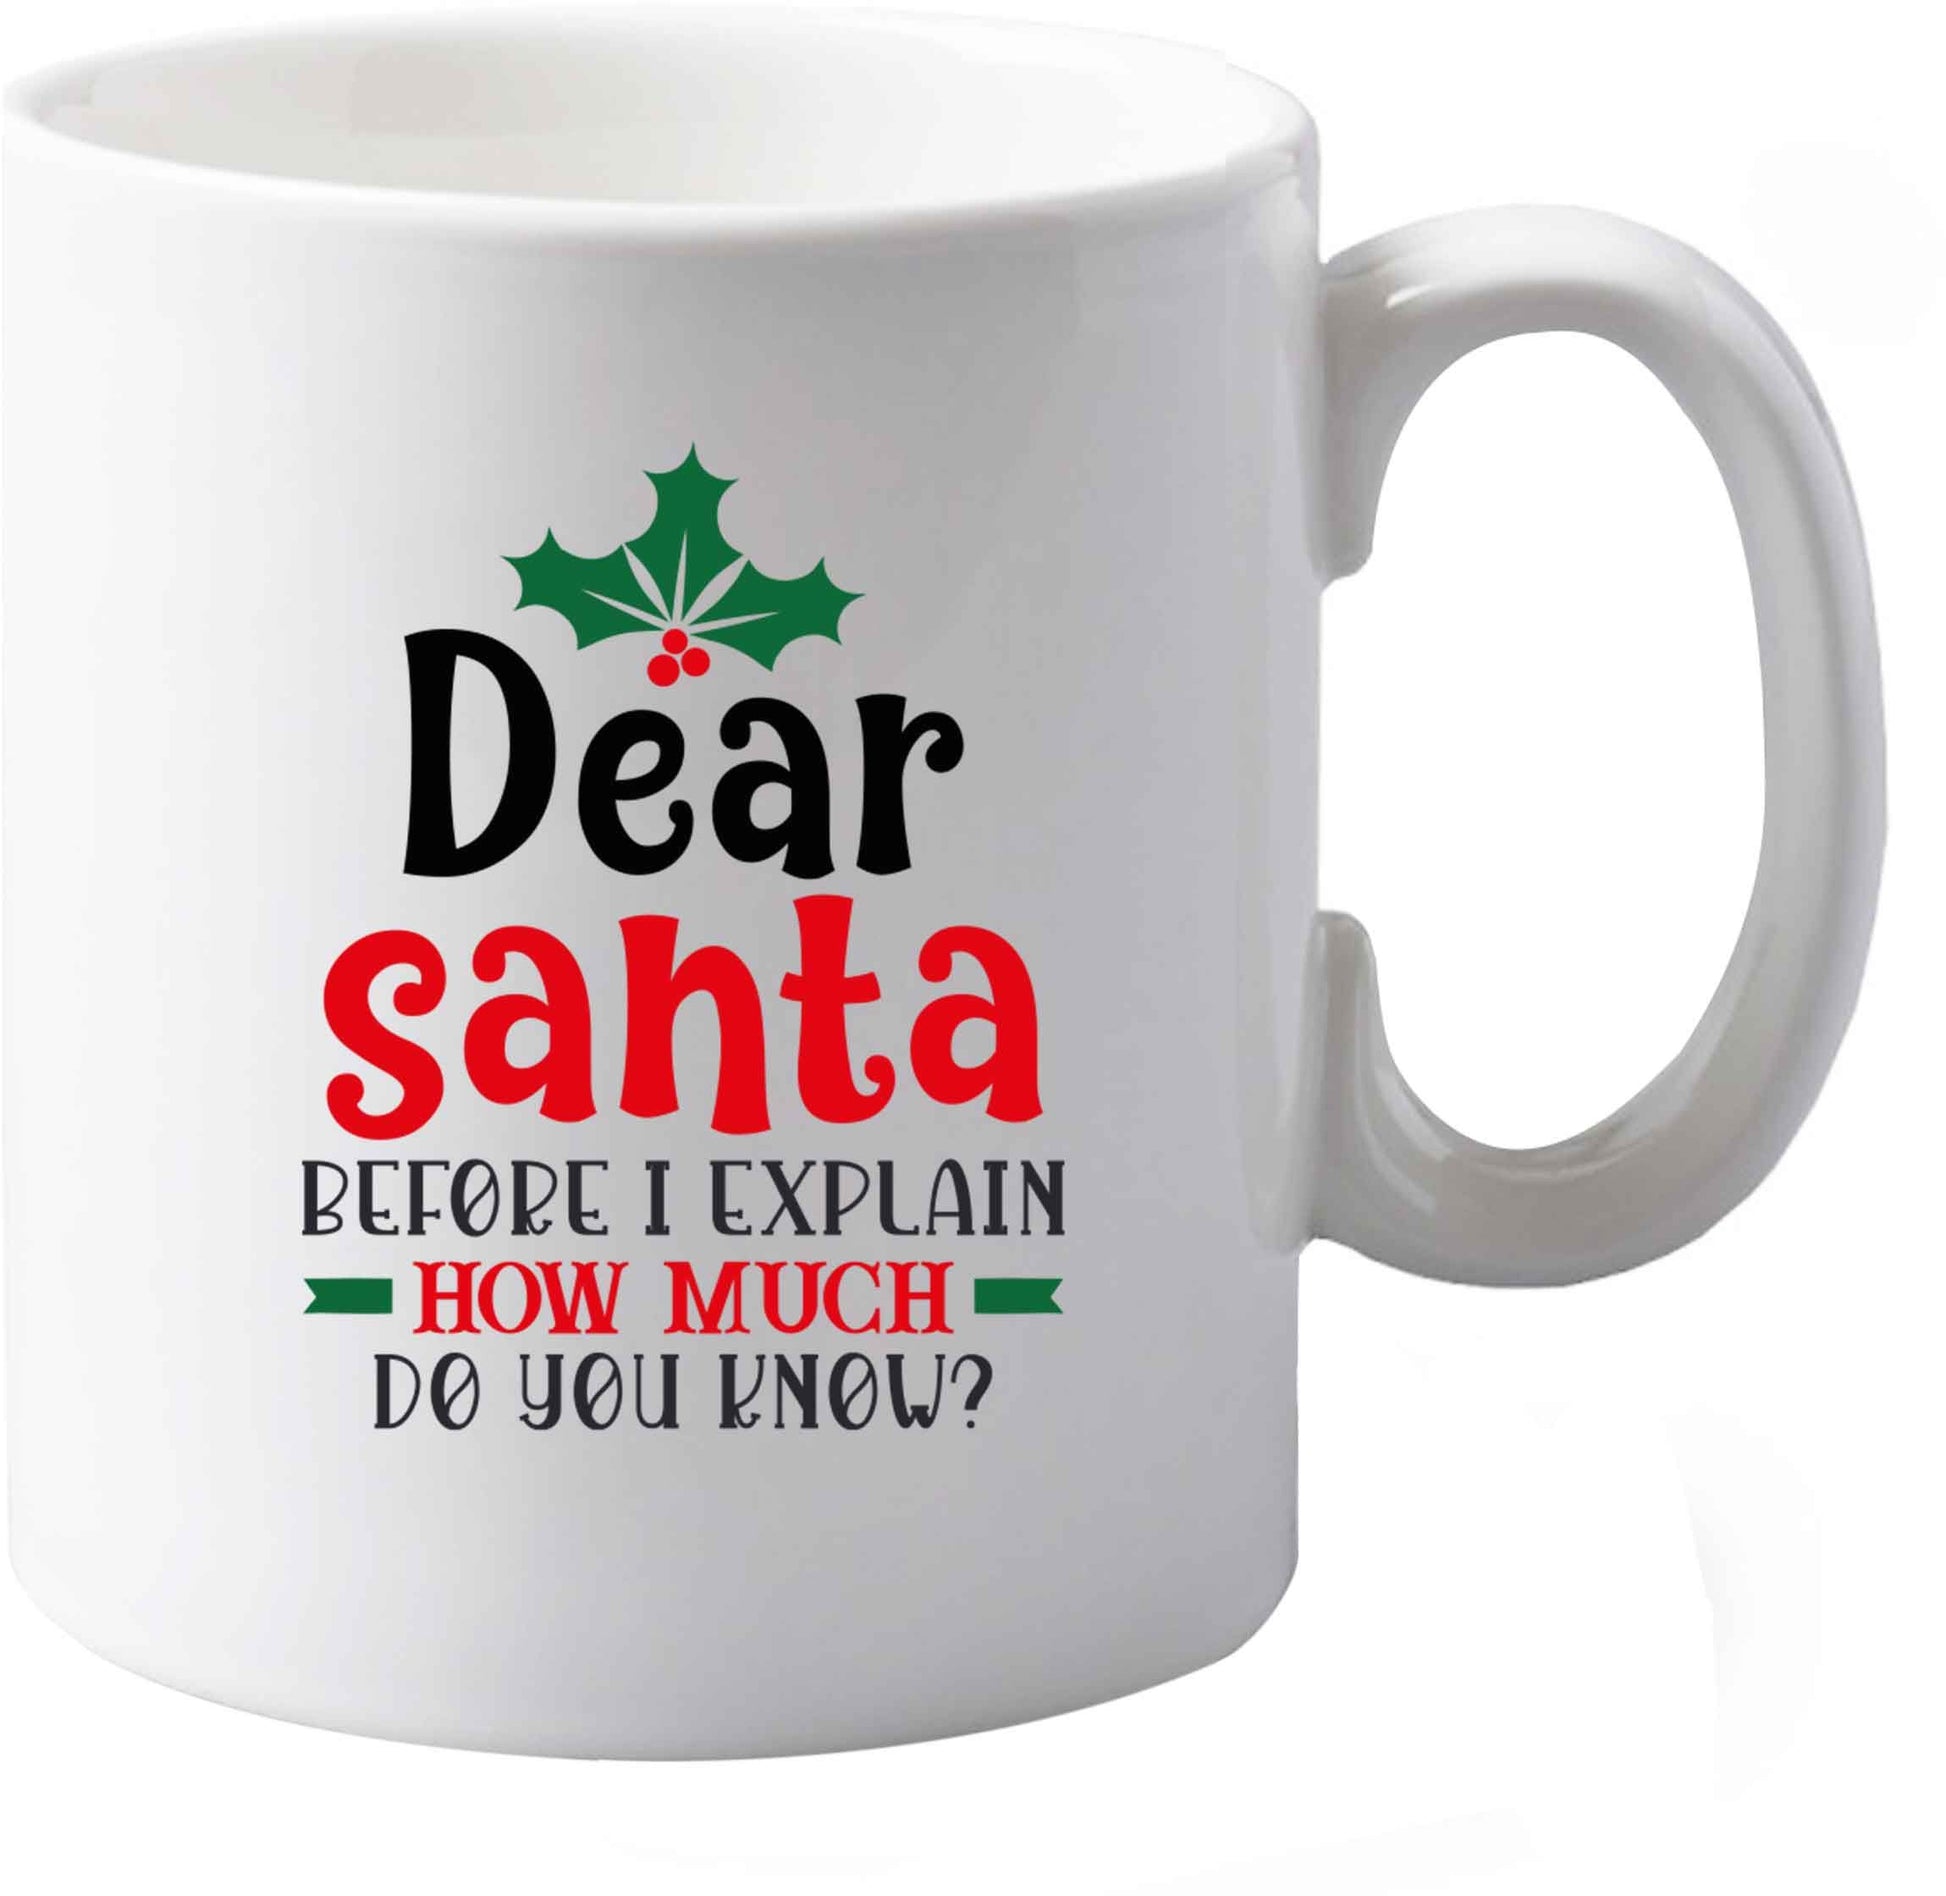 10 oz Santa before I explain how much do you know? ceramic mug both sides